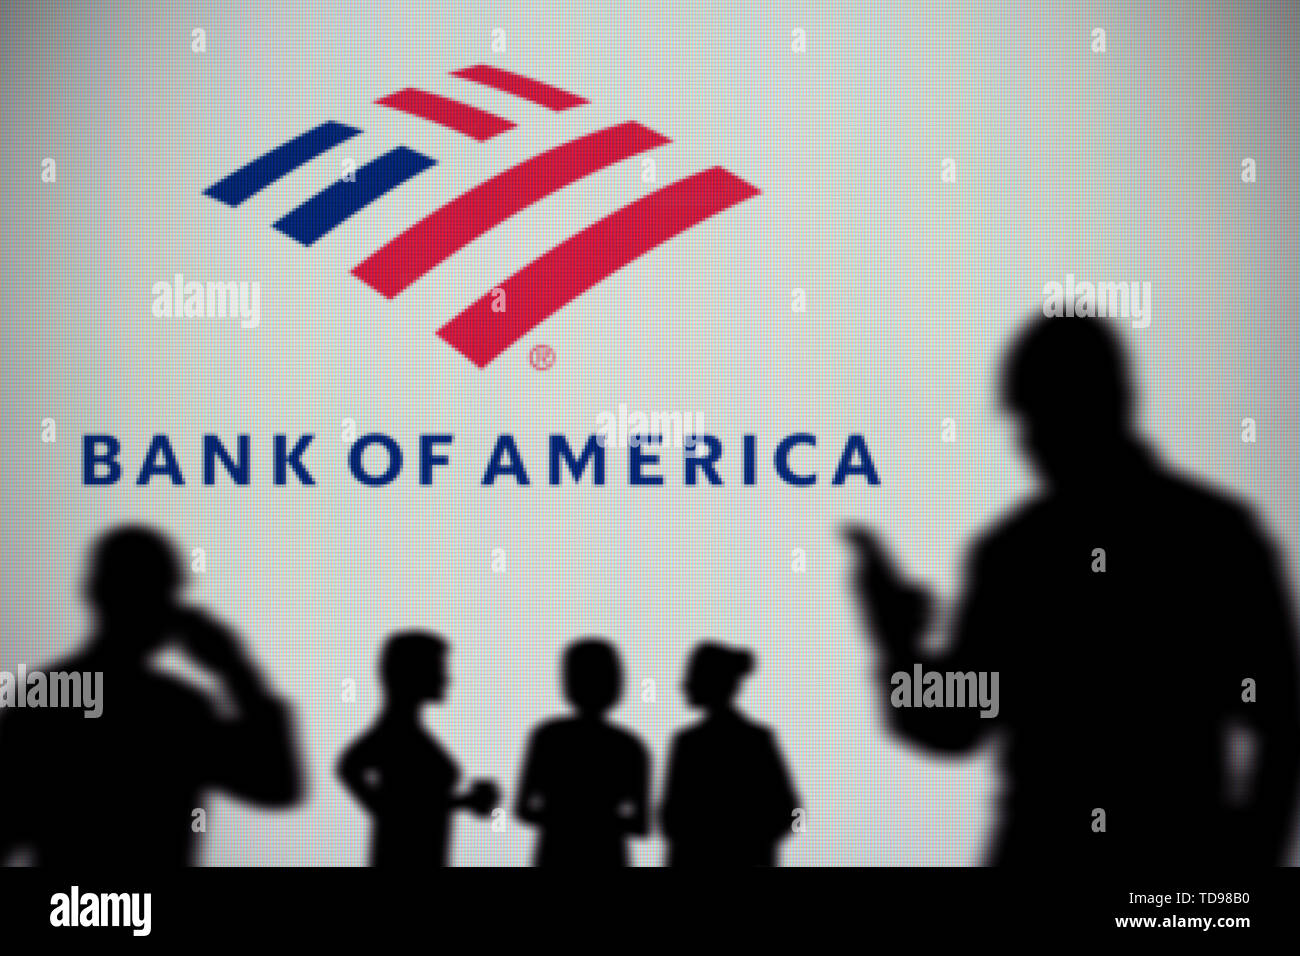 Die Bank von Amerika Logo ist auf einen LED-Bildschirm im Hintergrund, während eine Silhouette Person ein Smartphone im Vordergrund (nur redaktionelle Verwendung verwendet Stockfoto